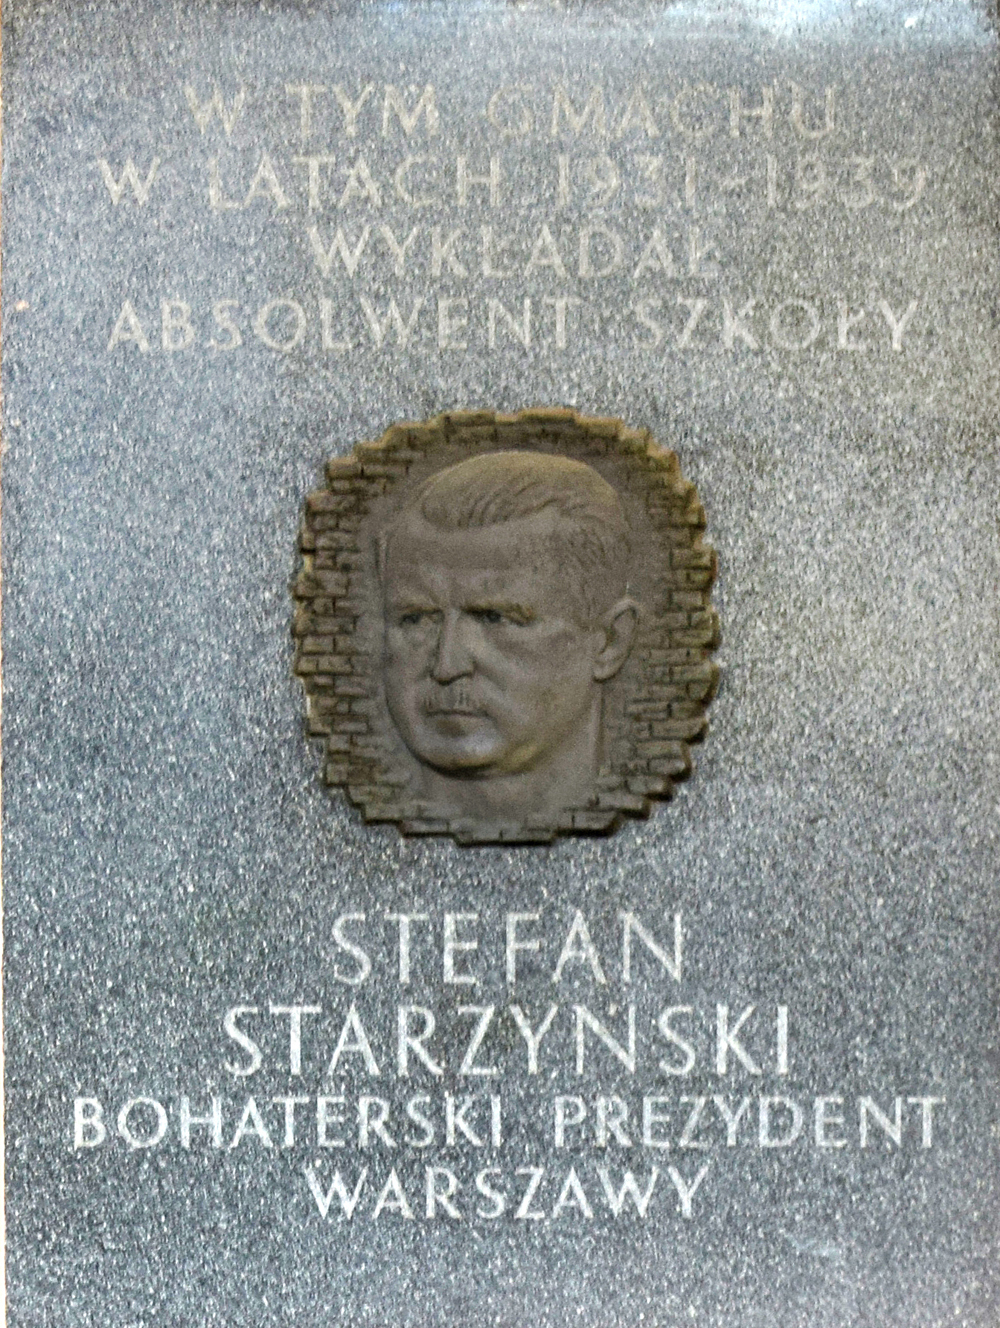     Tablica poświęcona Stefanowi Starzyńskiemu umieszczona na budynku A od ulicy Rakowieckiej.